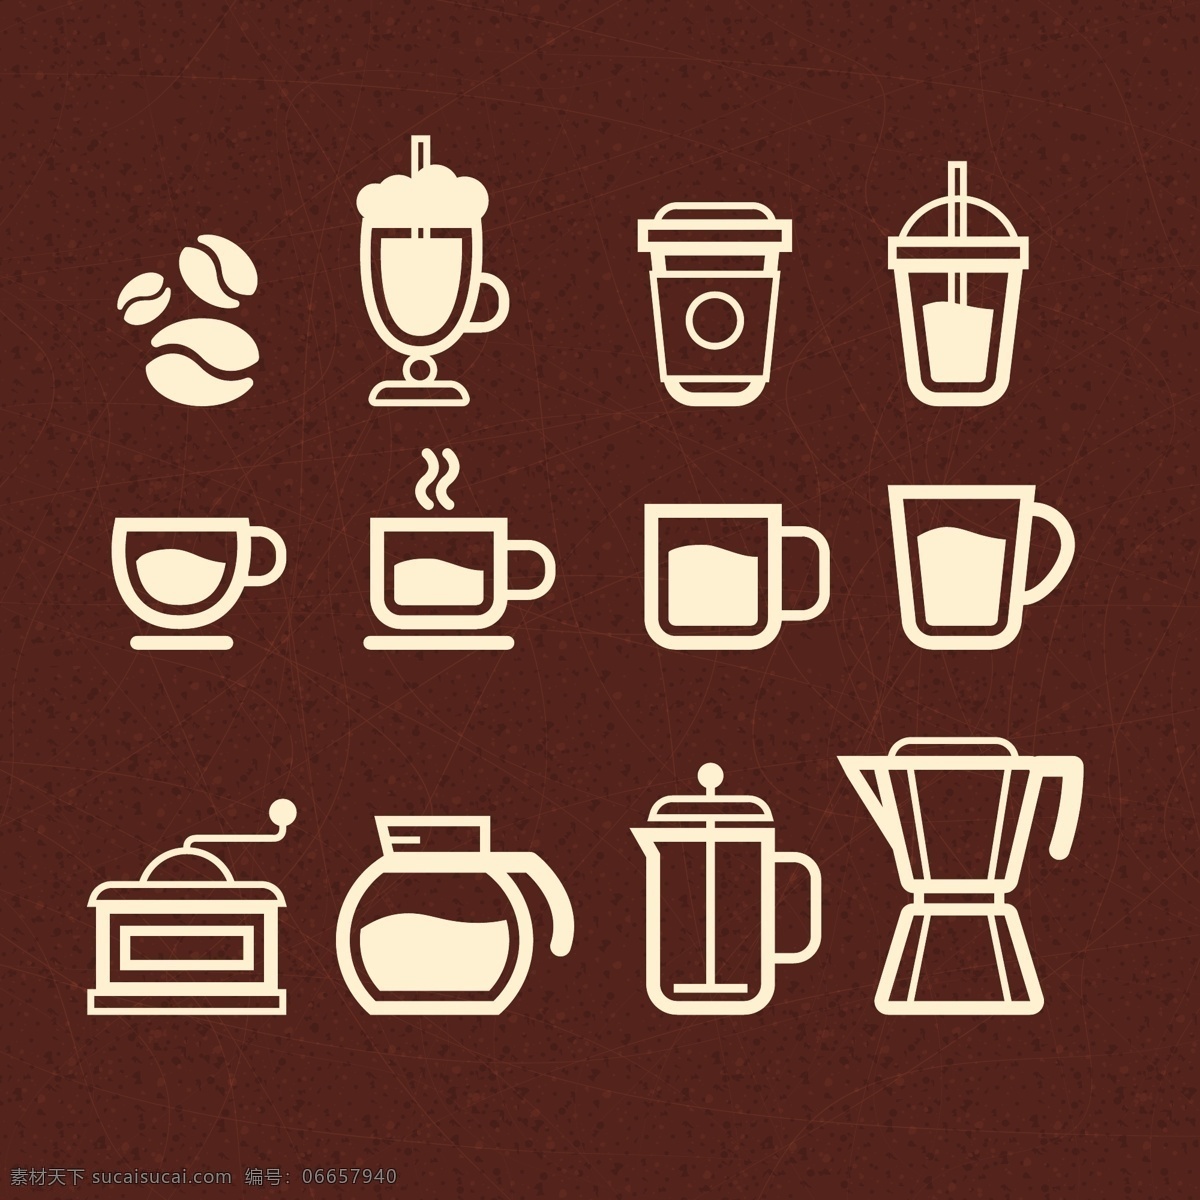 ui 咖啡 杯子 图标 ui设计 图标设计